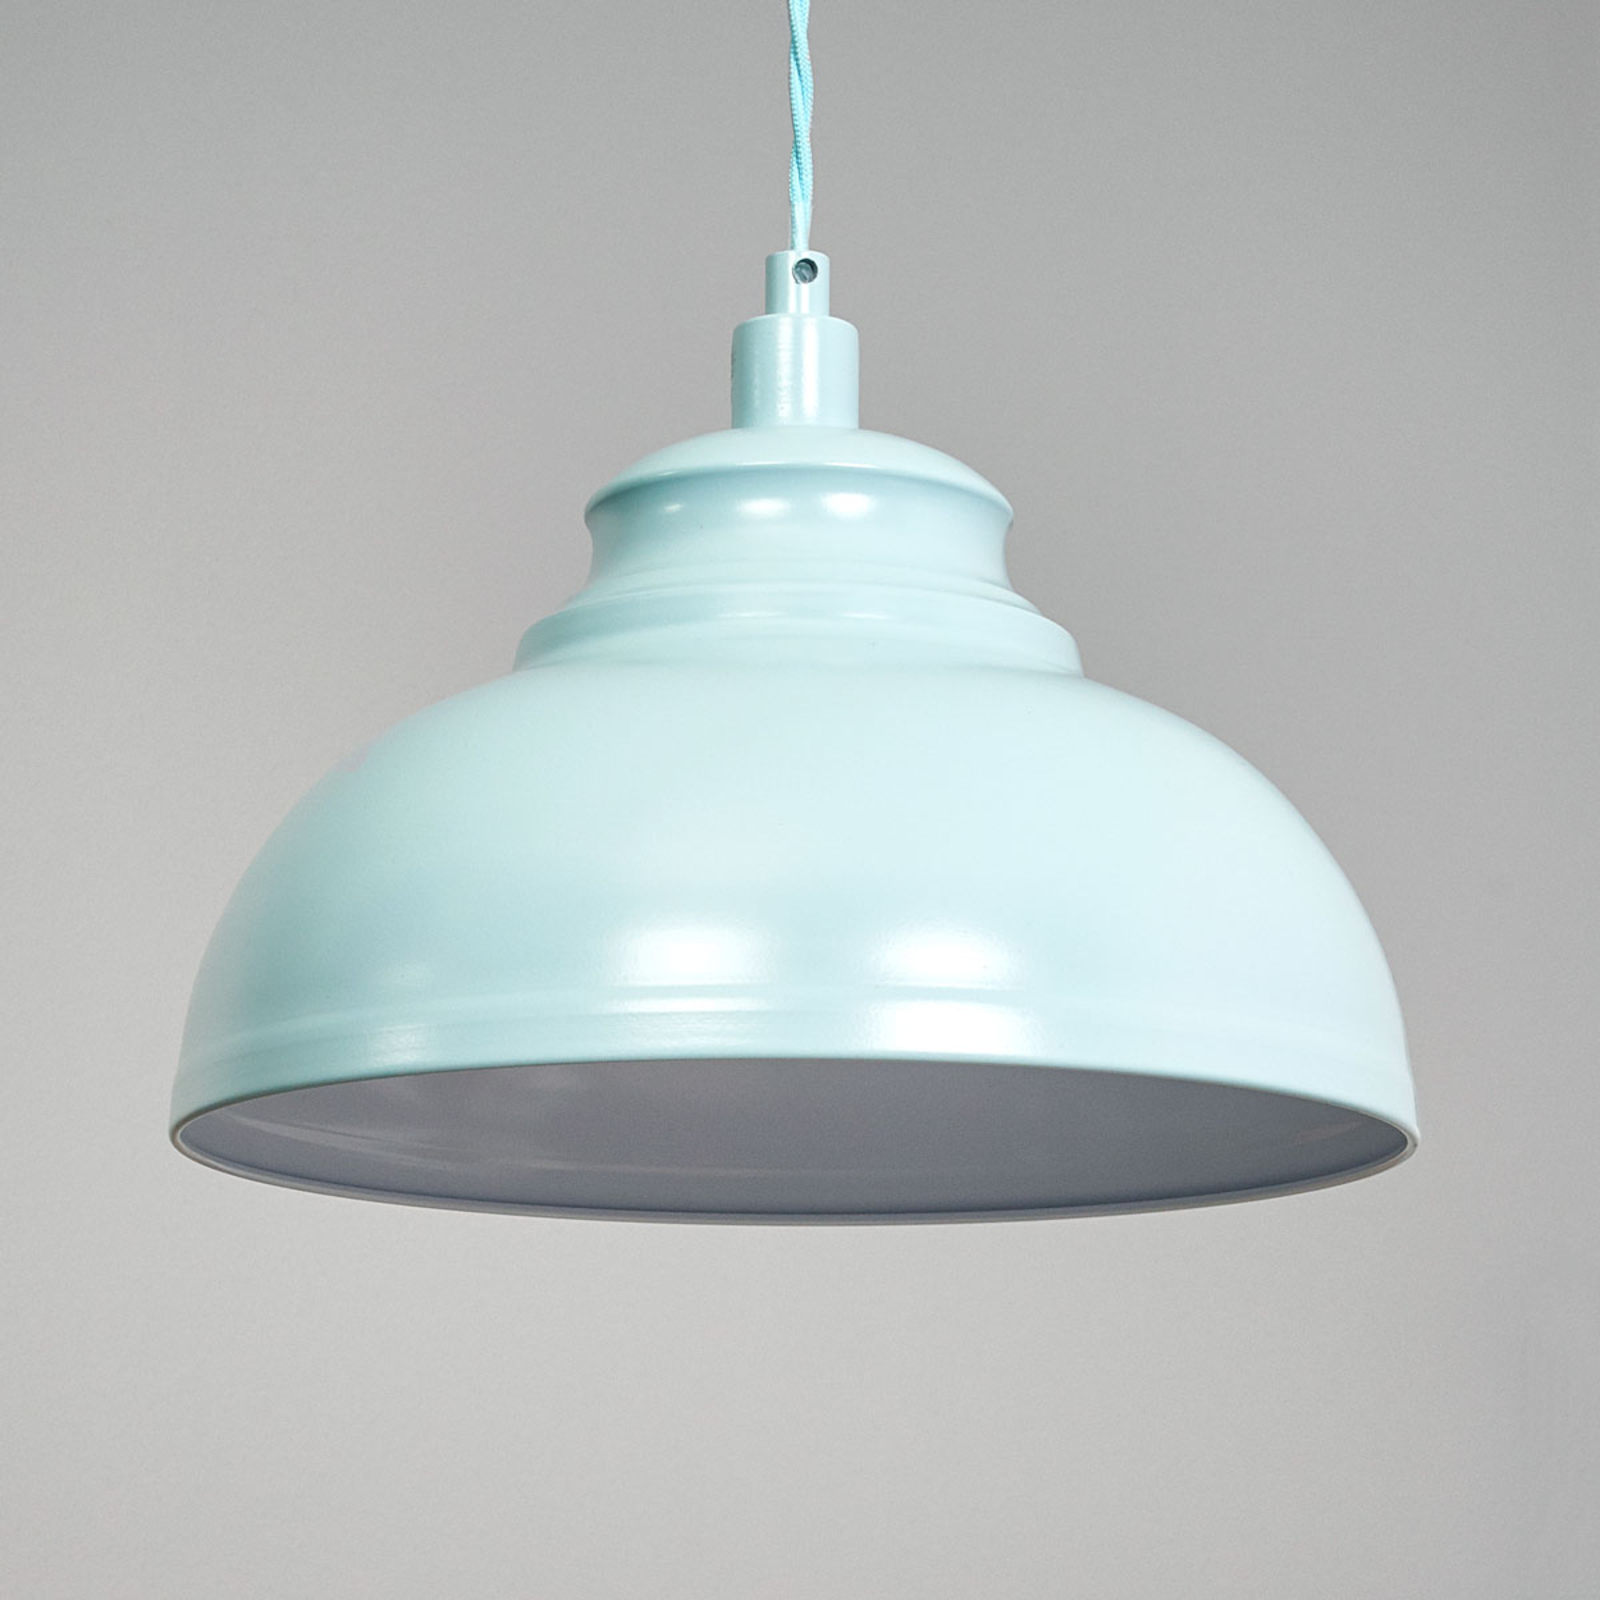 beloning leef ermee bedrijf Isla - een hanglamp in zacht blauw | Lampen24.nl